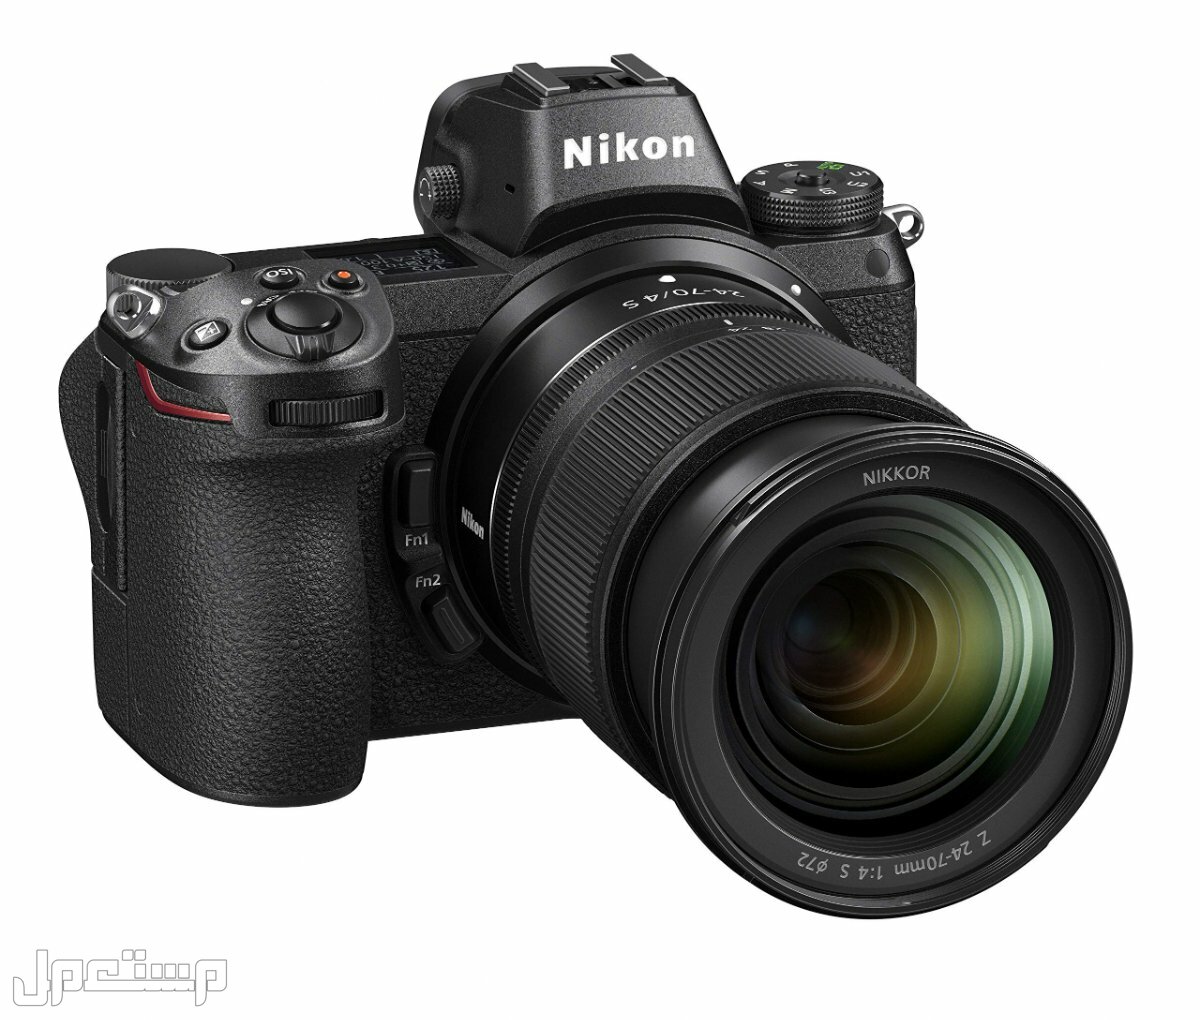 مواصفات ومميزات وأسعار أفضل أنواع كاميرات نيكون للمحترفين في العراق كاميرا Nikon Z6